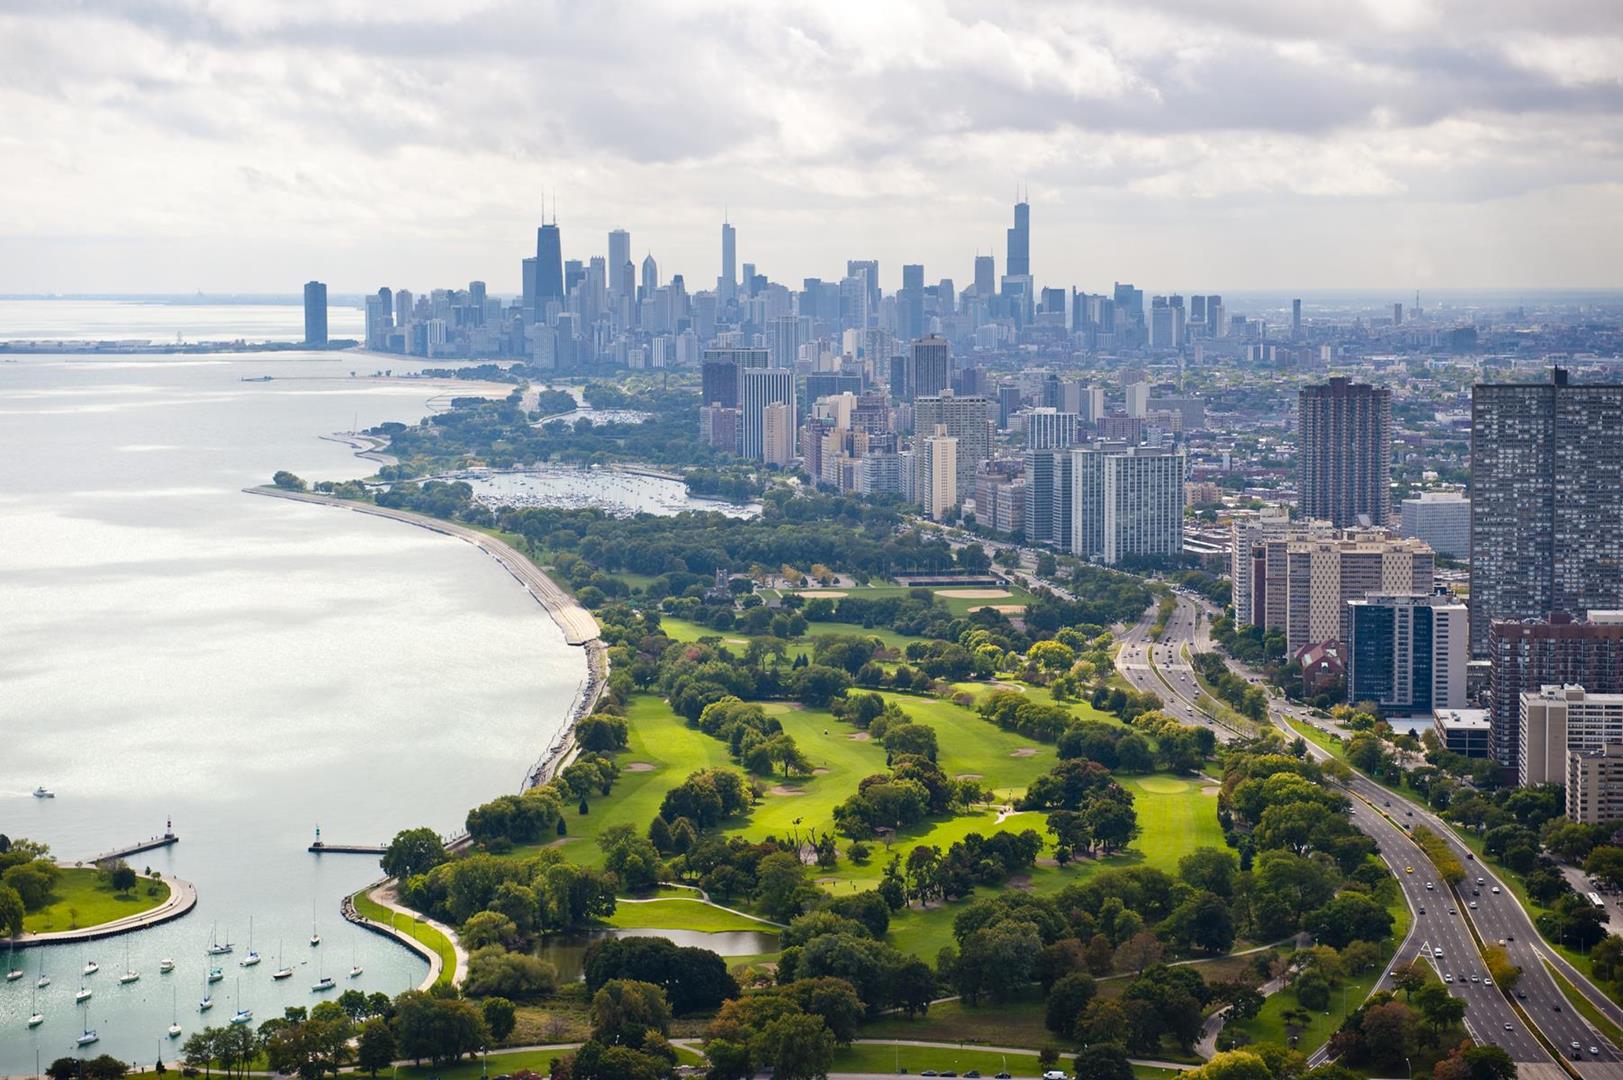 Chicago: A World-Class Sports Destination